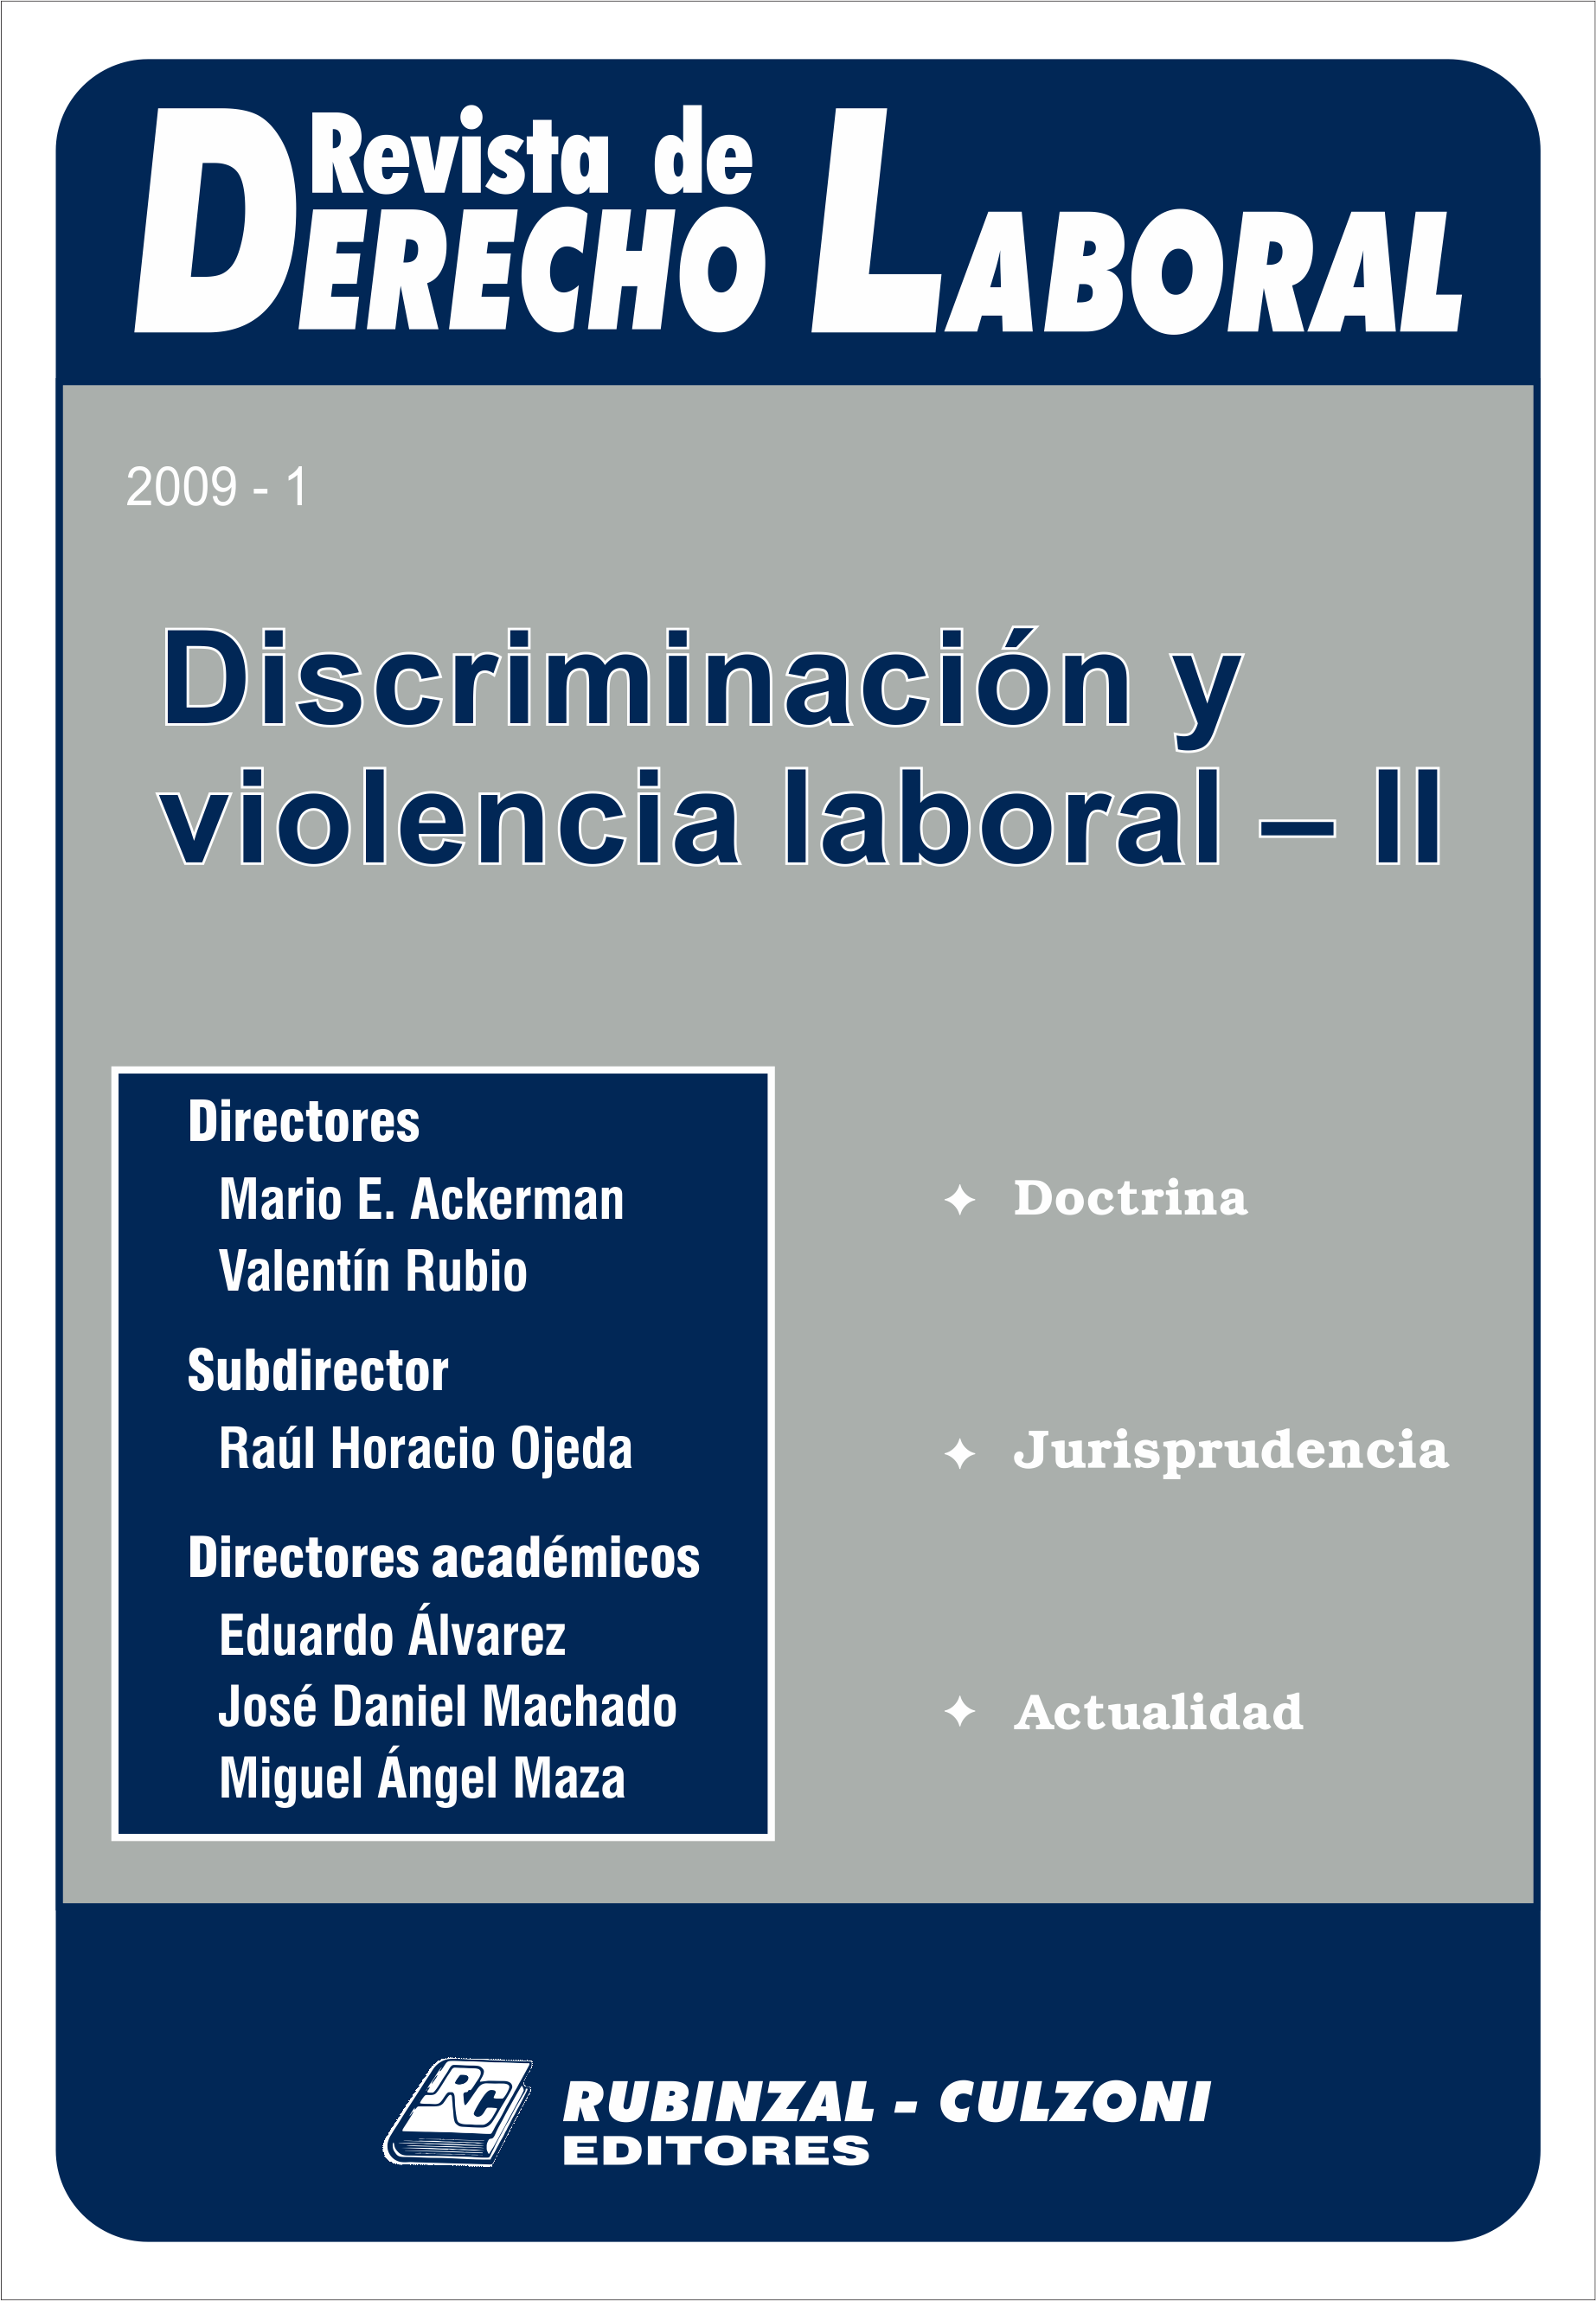 Revista de Derecho Laboral - Discriminación y violencia laboral - II.